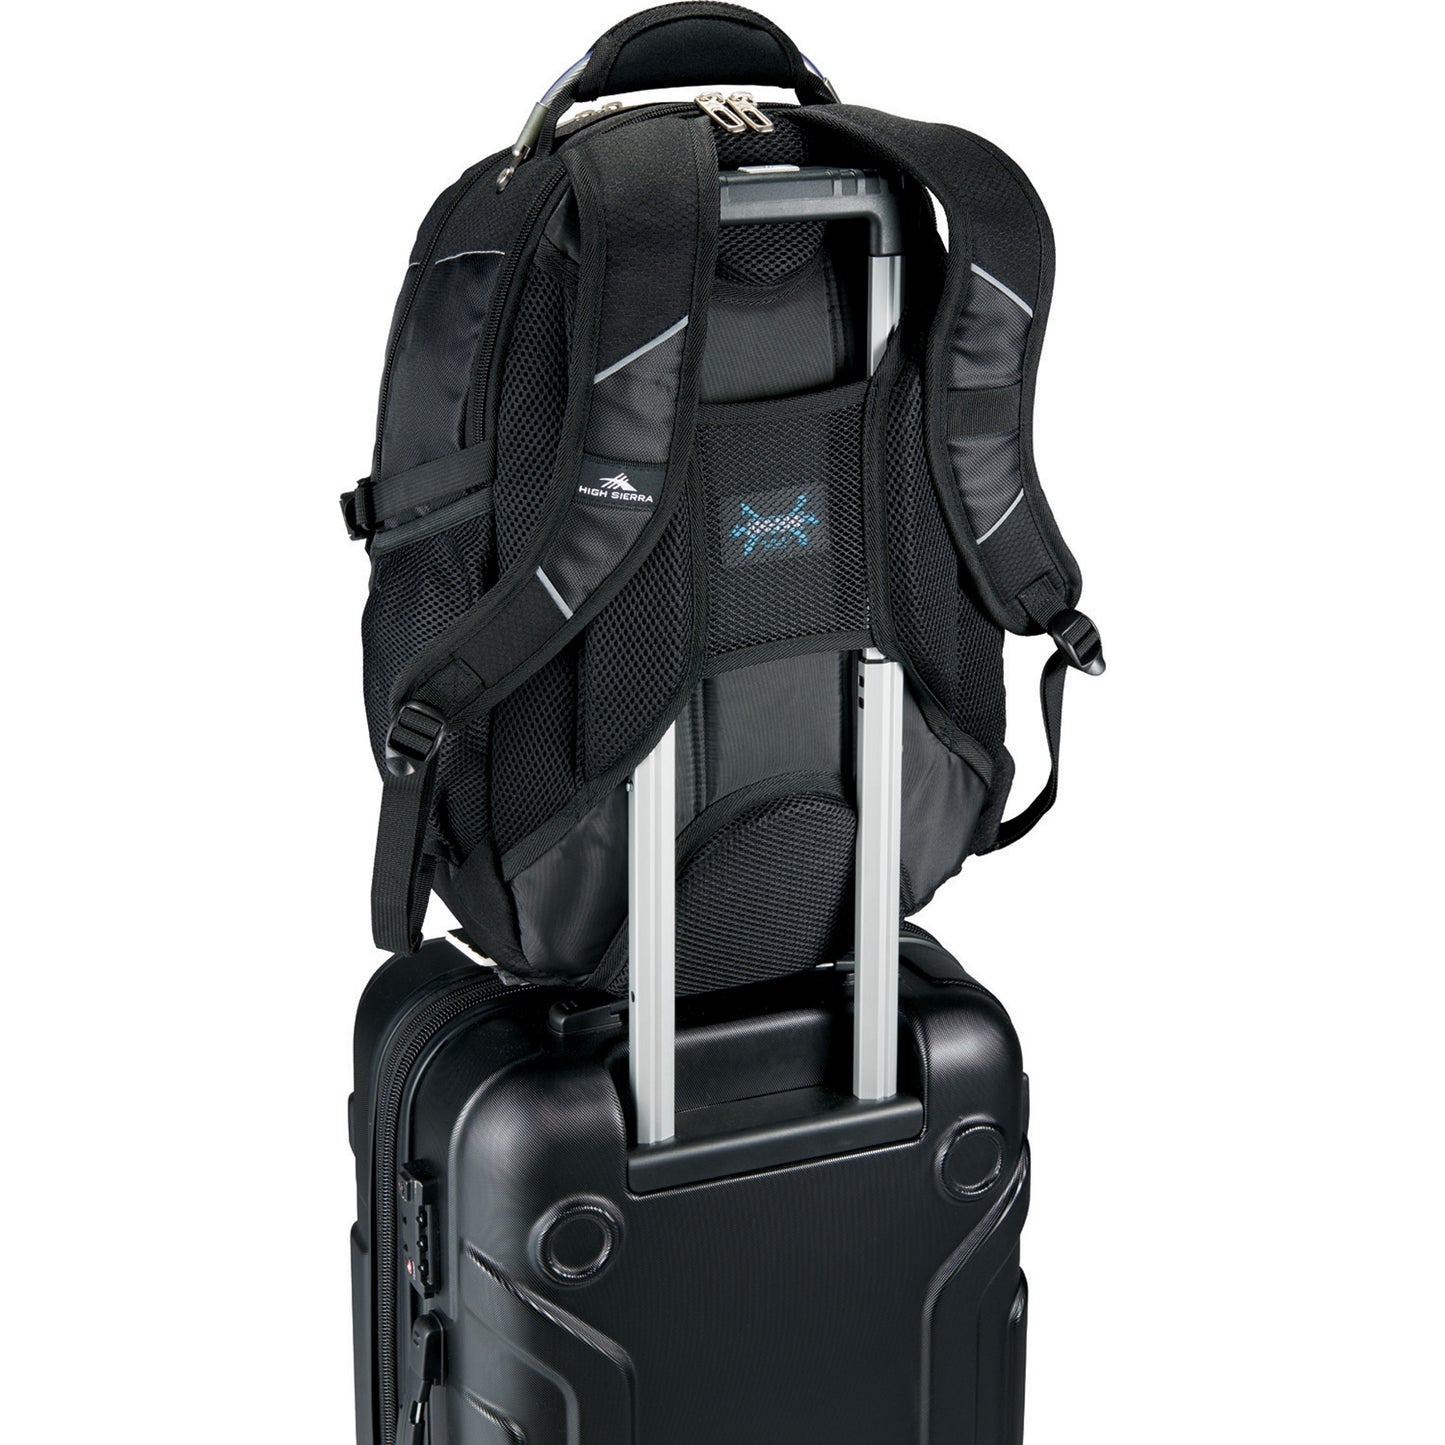 High Sierra® XBT Elite 15" Computer Backpack